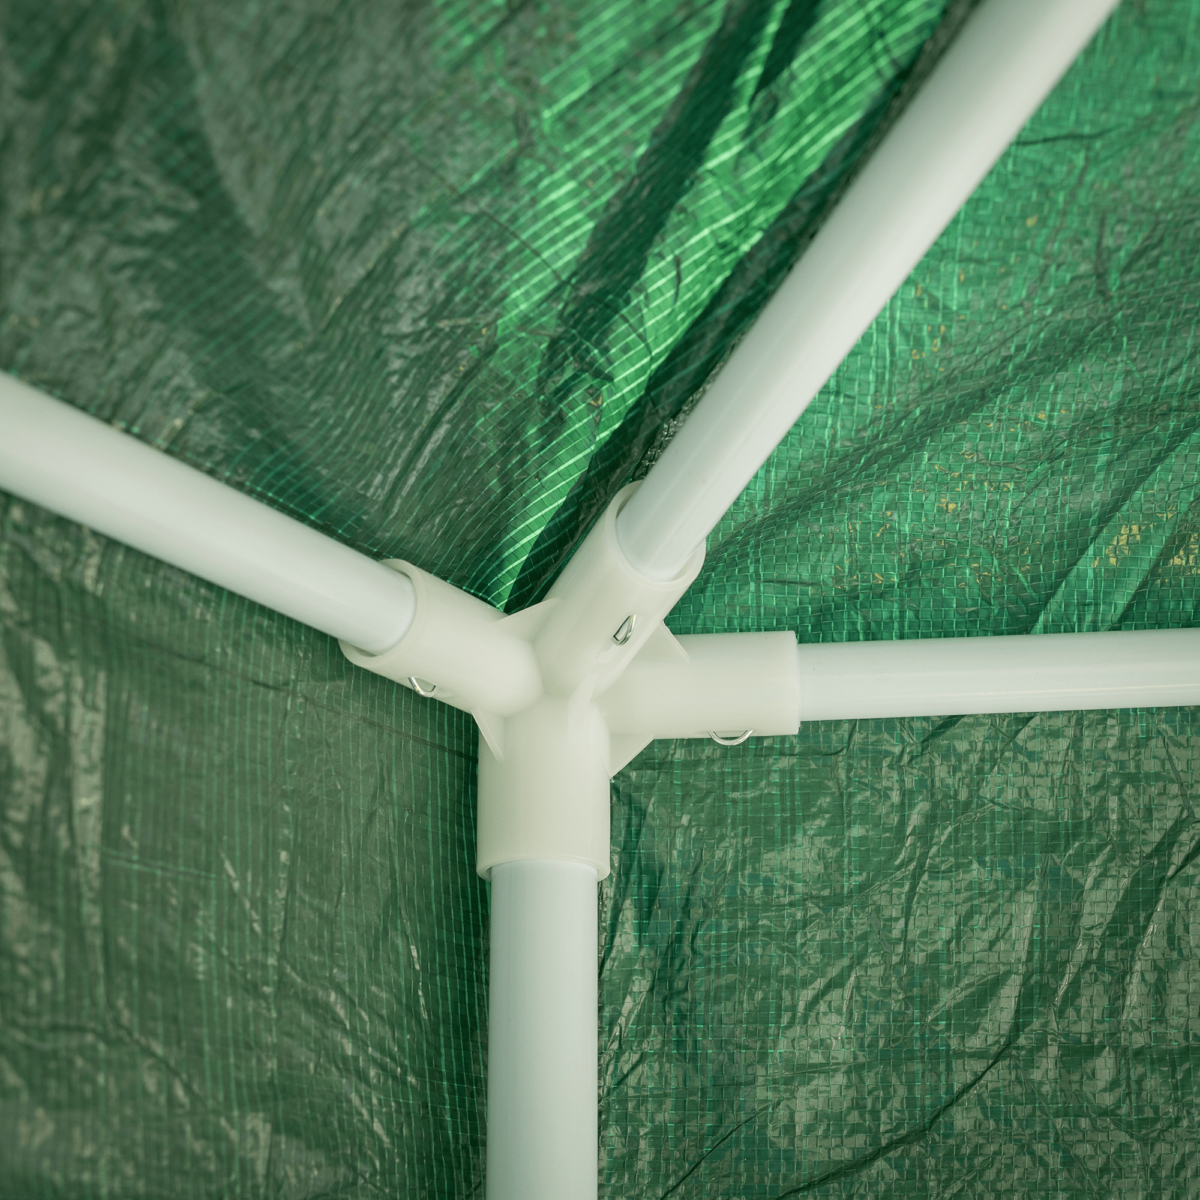 Kerti pavilon sátor, 3,9x2,5x3,9m, zöld/fehér, RINGE TYP 1+6 oldal